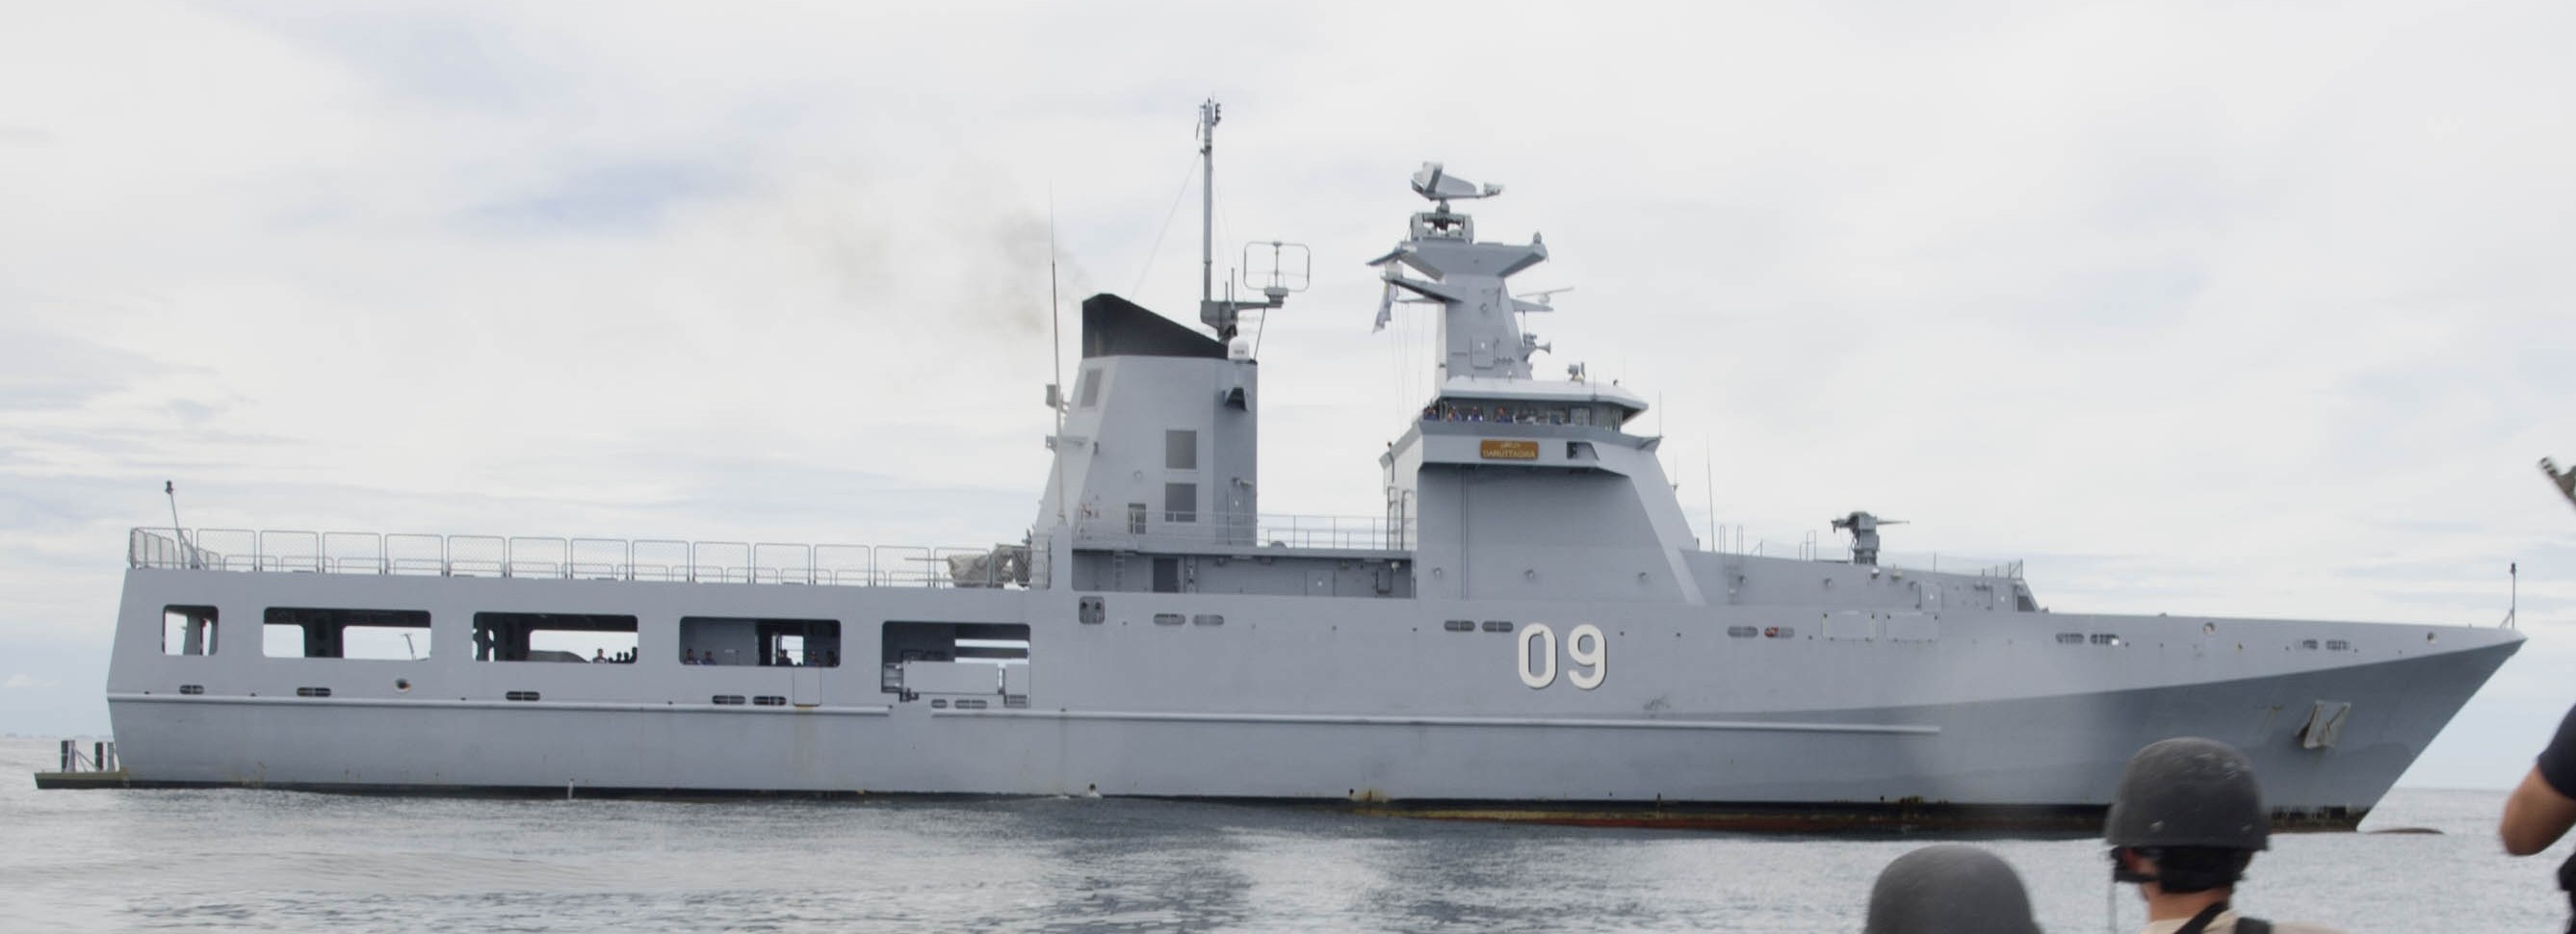 opv 09 kdb daruttaqwa offshore patrol vessel darussalem class royal brunei navy 02